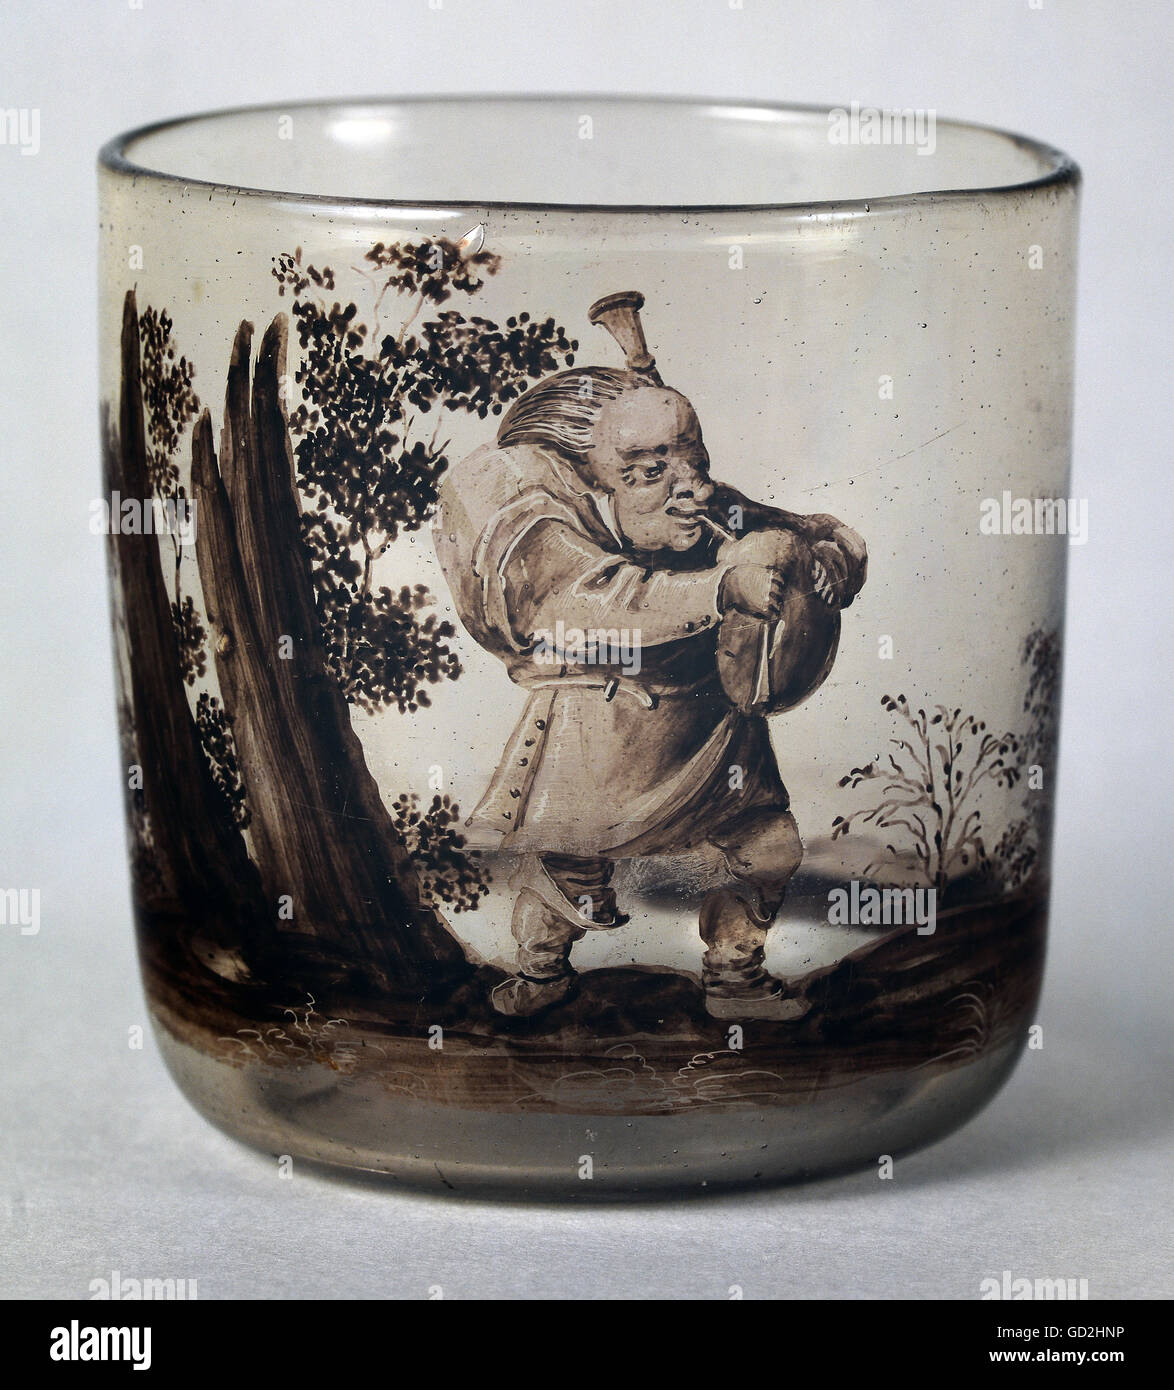 Belle arti, la pittura del vetro, calice, cornamusa giocando nana, attribuiti a Johann Scharper, Norimberga, circa 1670, artista del diritto d'autore non deve essere cancellata Foto Stock